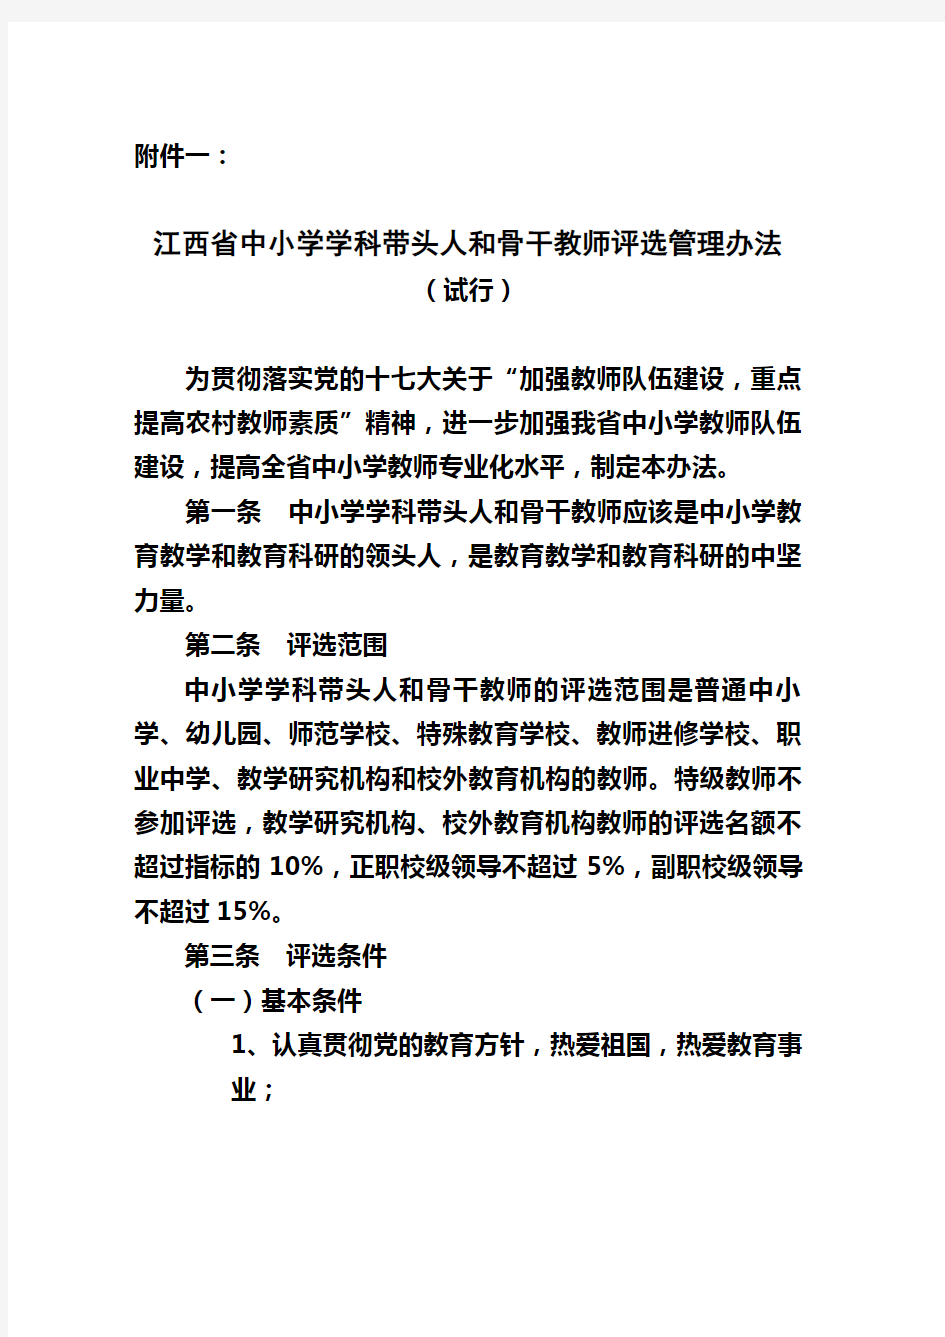 江西省中小学学科带头人和骨干教师评选管理办法